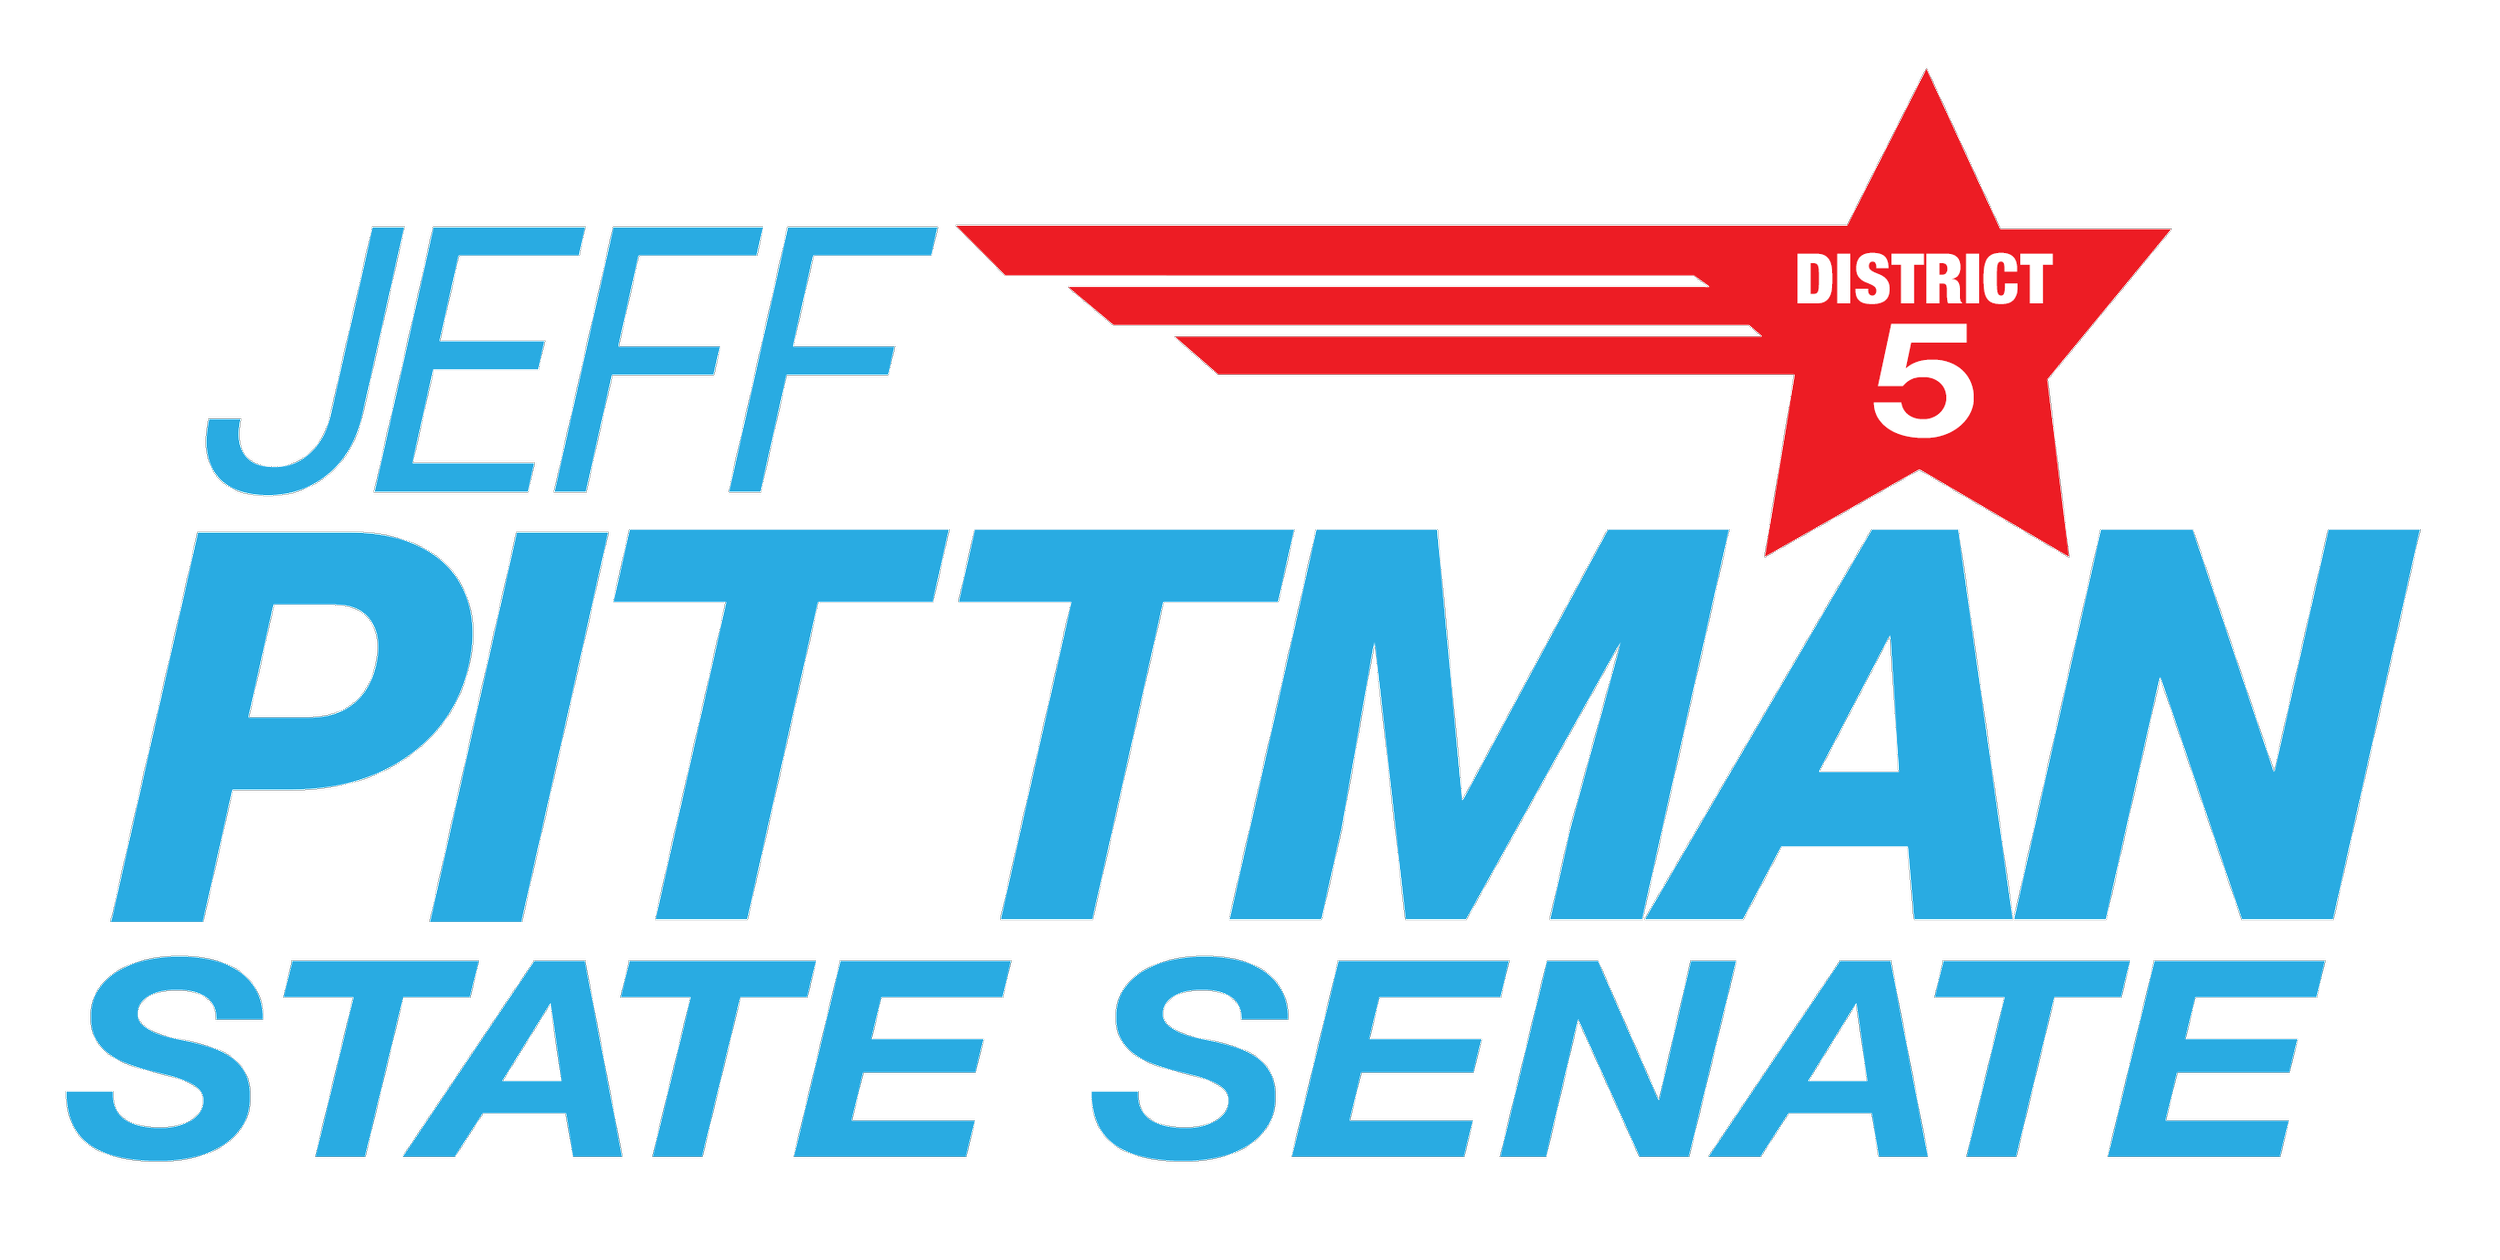 Jeff Pittman State Senate